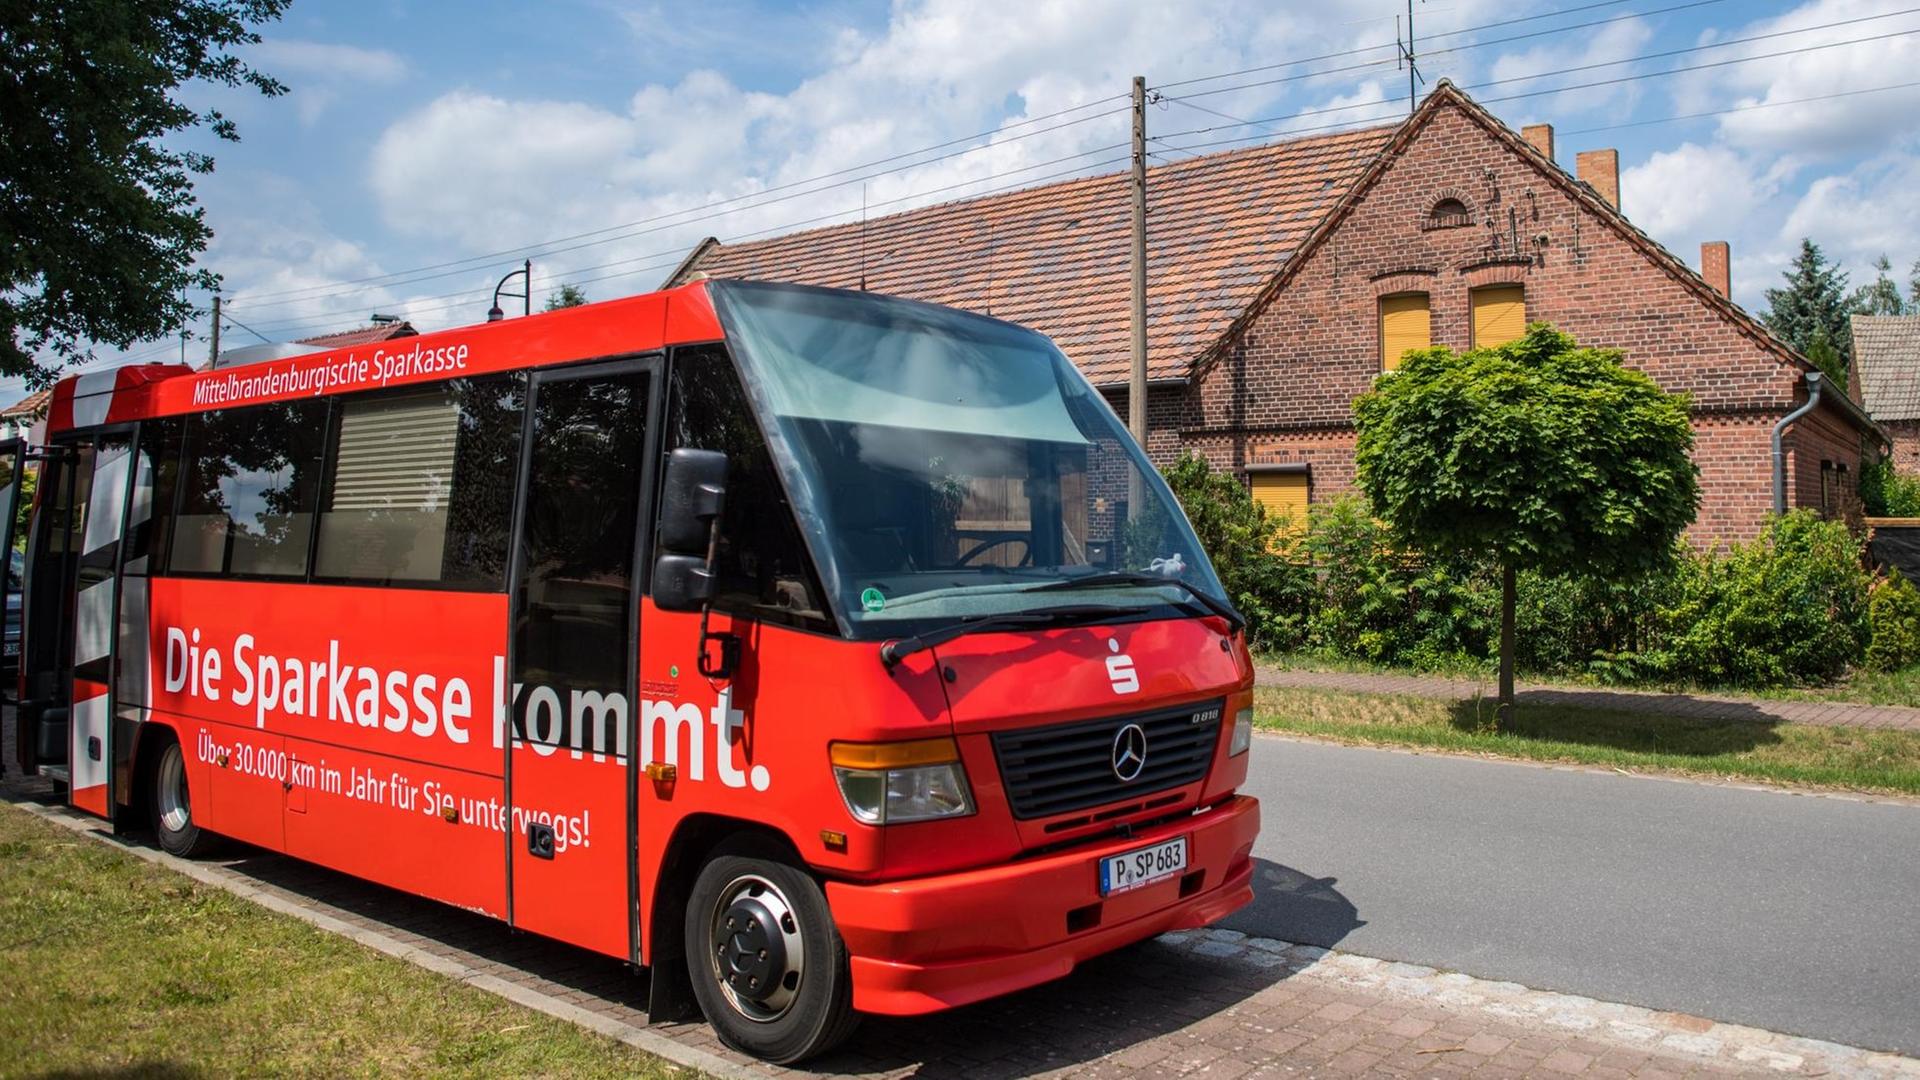 Der Sparkassenbuss der Mittelbrandenburgischen Sparkasse steht am 06.07.2017 in der Dorfstraße in Bornsdorf (Brandenburg). Foto: Patrick Pleul/dpa-Zentralbild/ZB | Verwendung weltweit